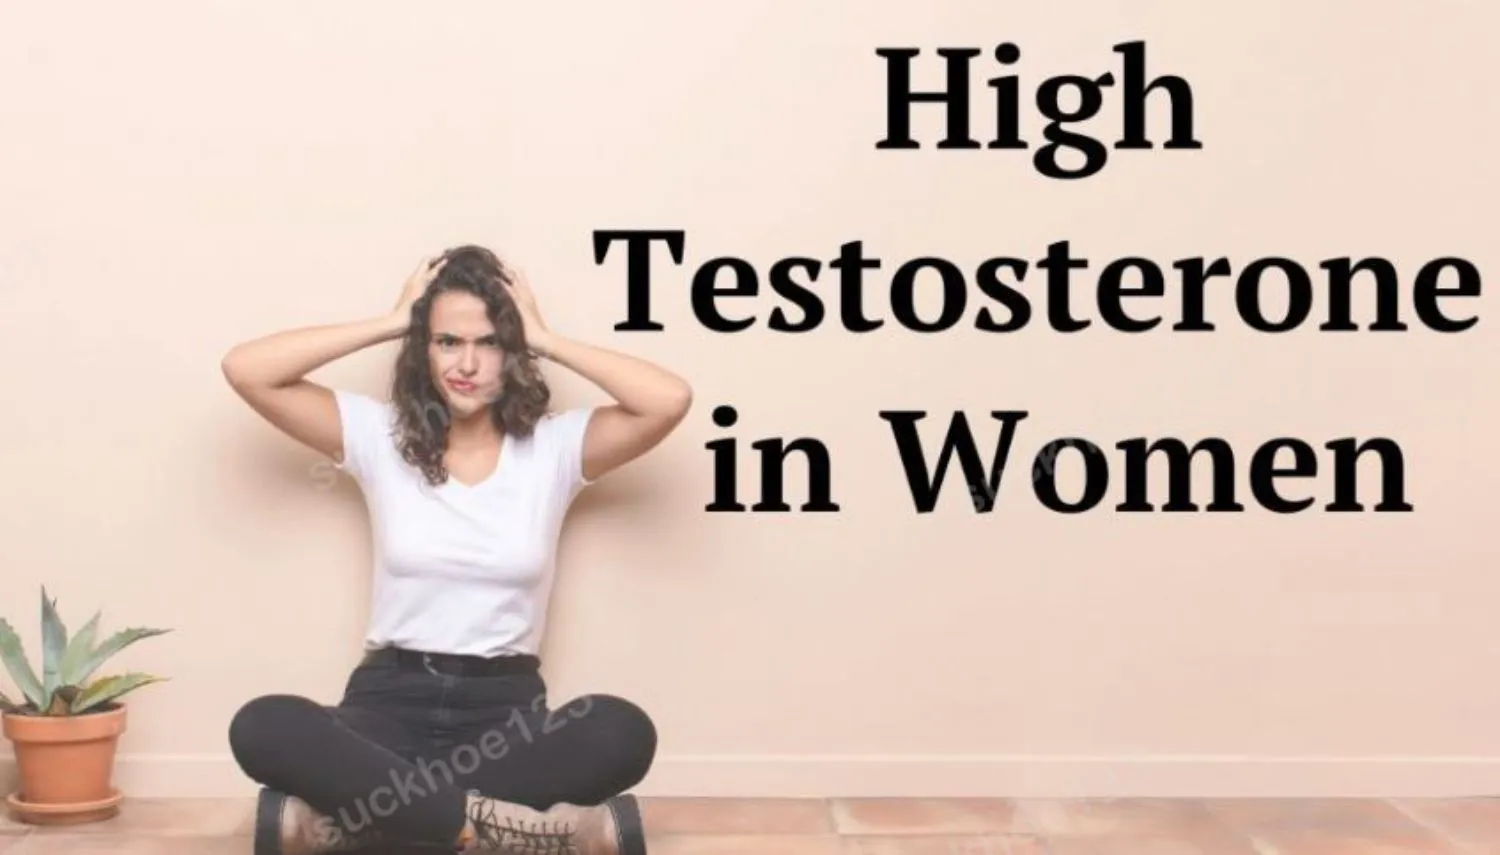 Testosterone cao ở phụ nữ có tác hại thế nào?